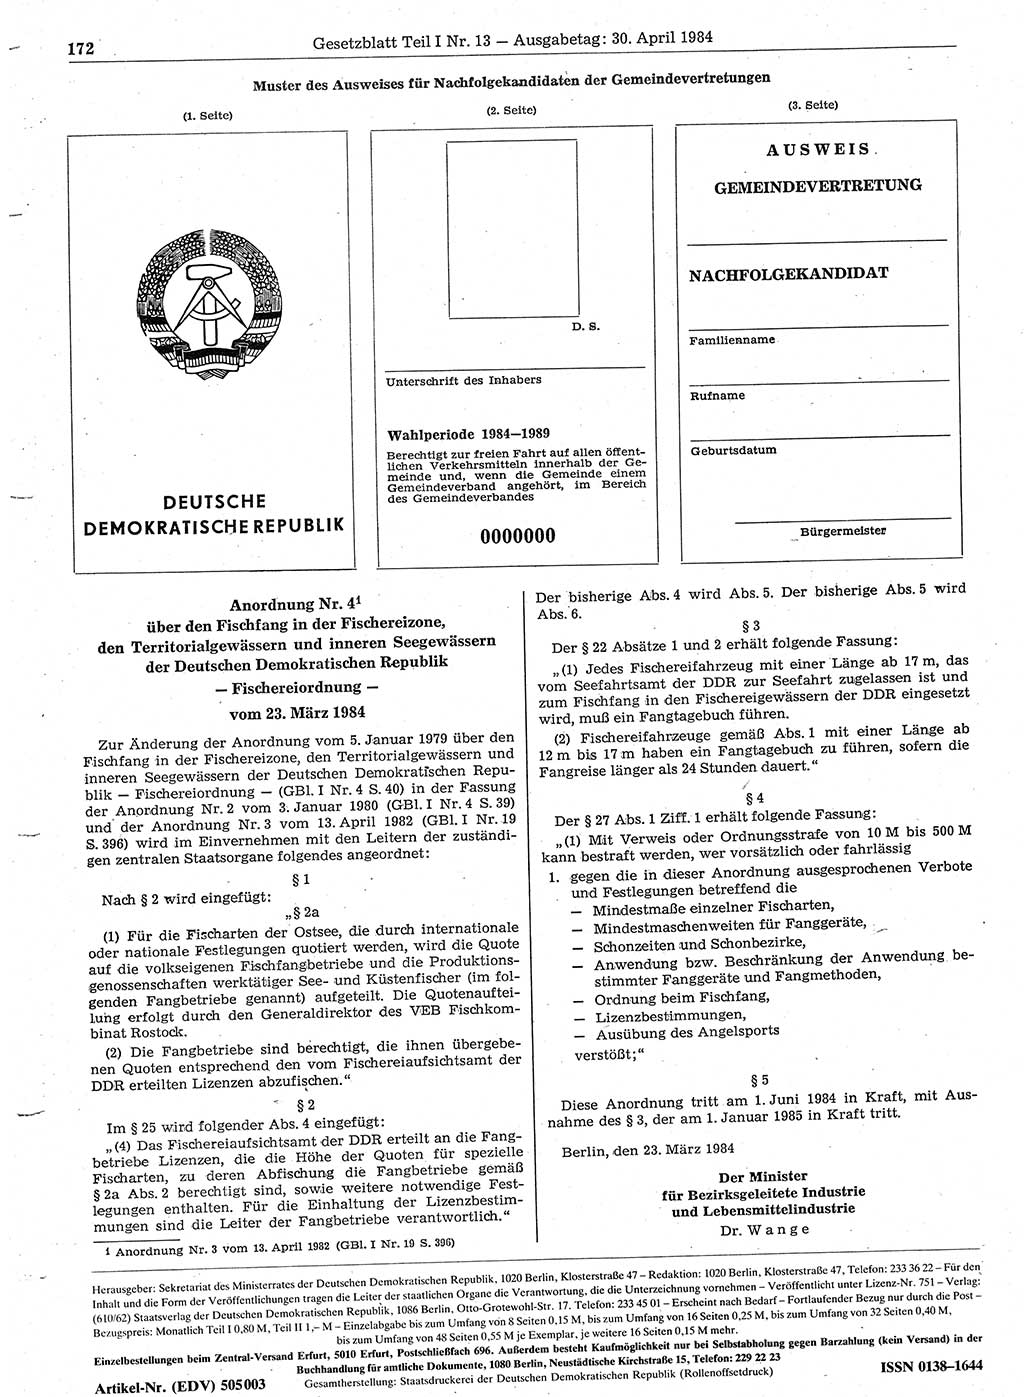 Gesetzblatt (GBl.) der Deutschen Demokratischen Republik (DDR) Teil Ⅰ 1984, Seite 172 (GBl. DDR Ⅰ 1984, S. 172)